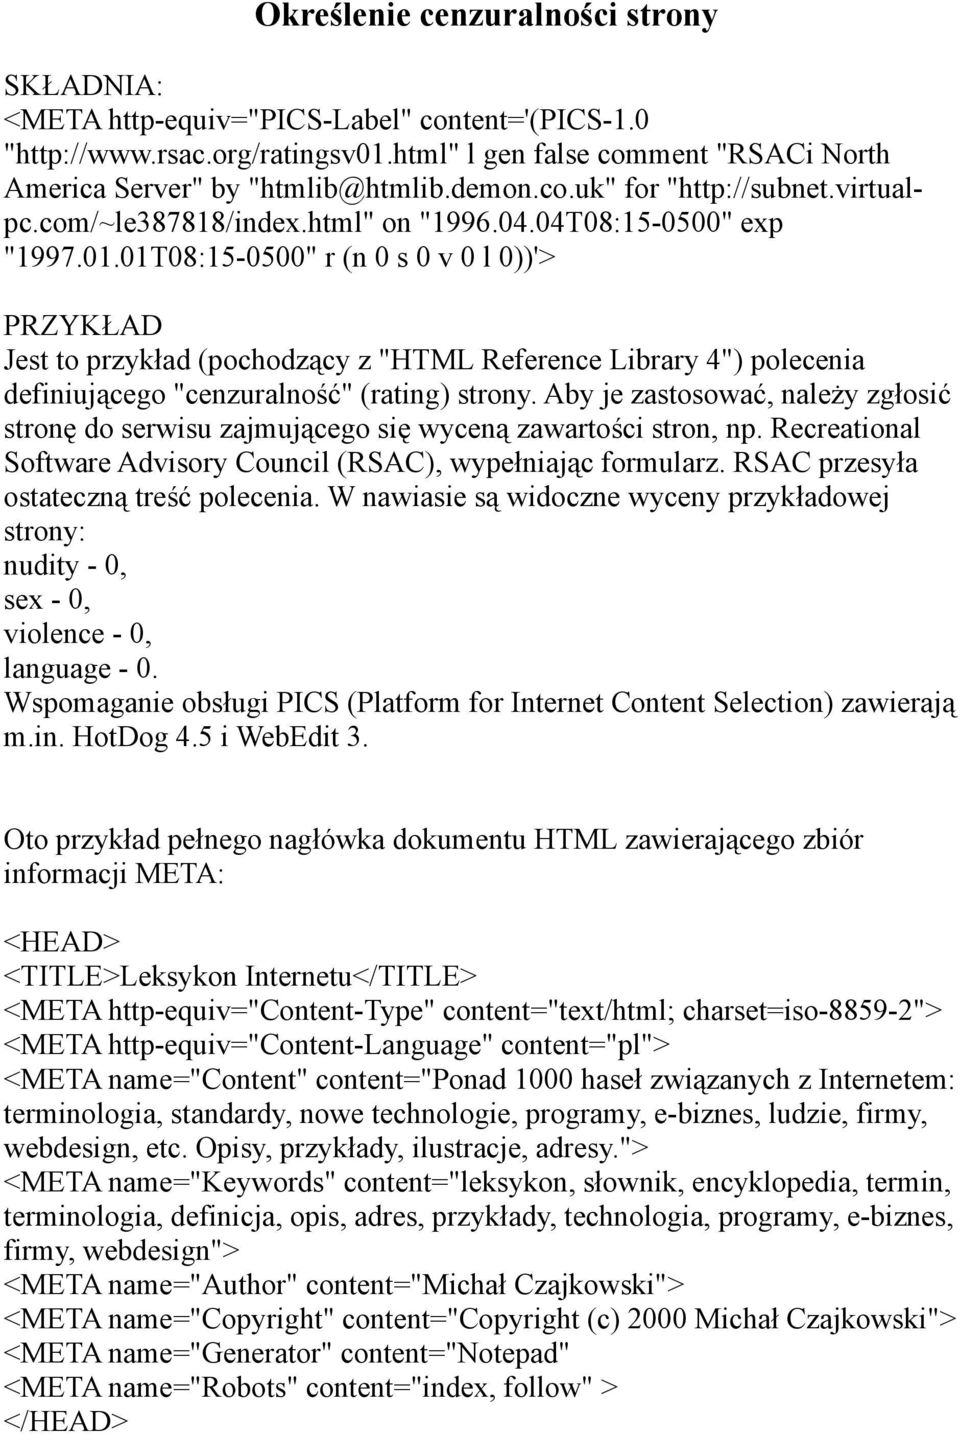 01T08:15-0500" r (n 0 s 0 v 0 l 0))'> PRZYKŁAD Jest to przykład (pochodzący z "HTML Reference Library 4") polecenia definiującego "cenzuralność" (rating) strony.